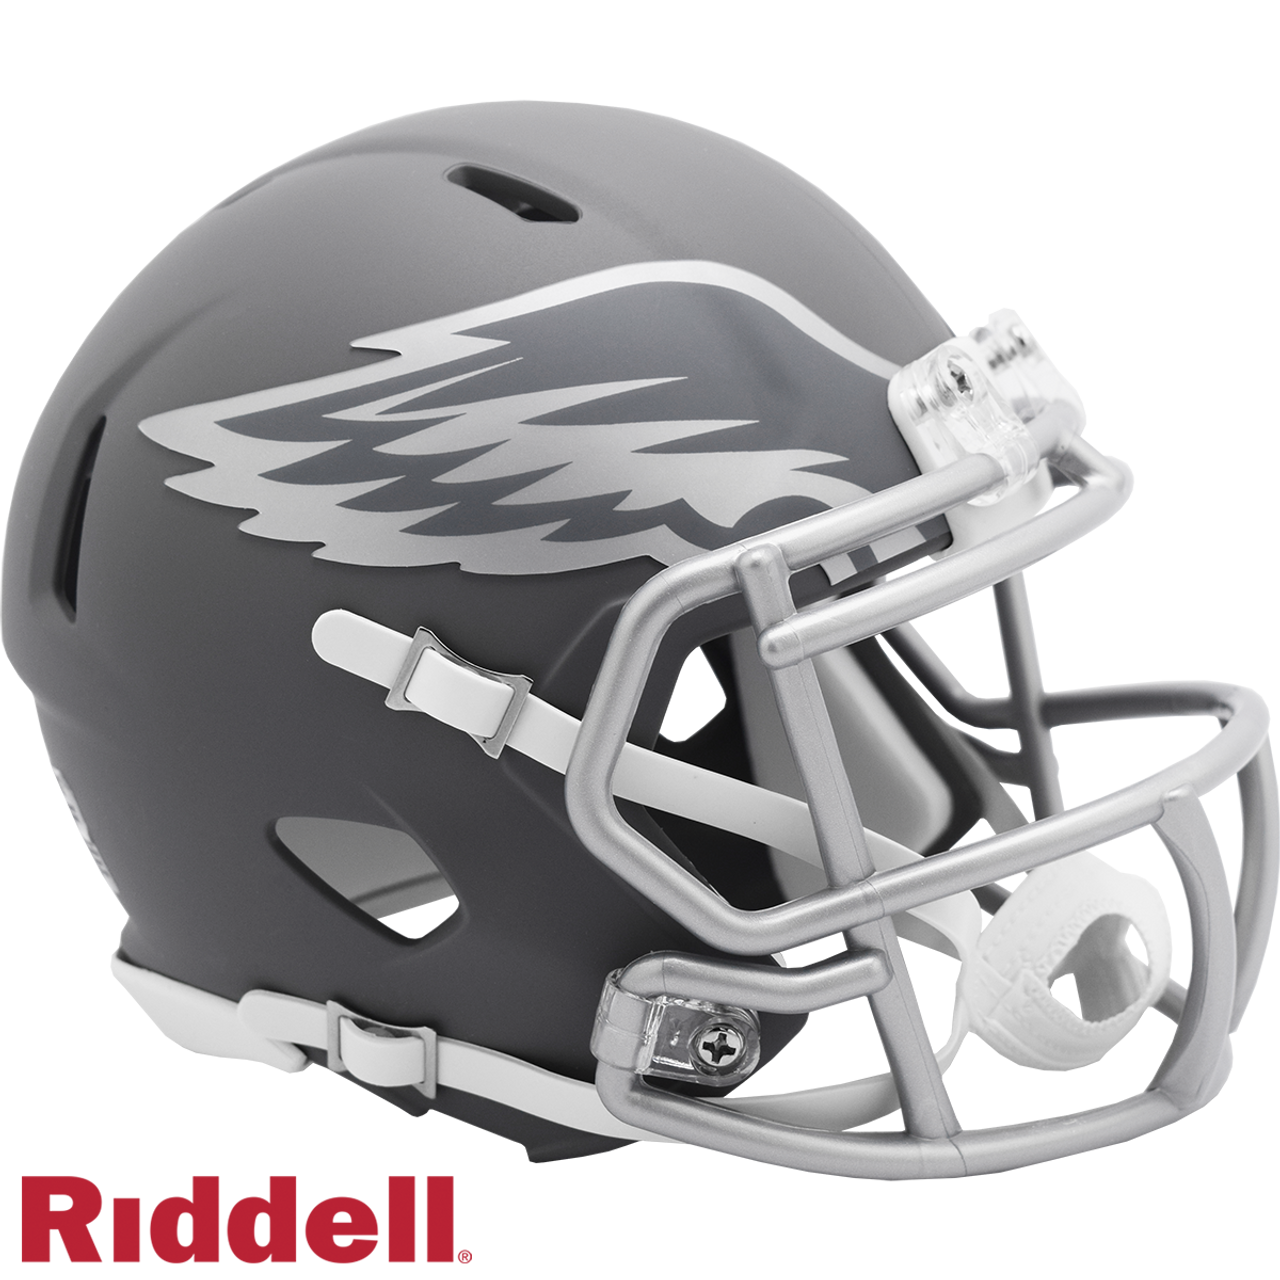 Philadelphia Eagles Helmet Riddell Replica Mini Speed Style Slate Alternate